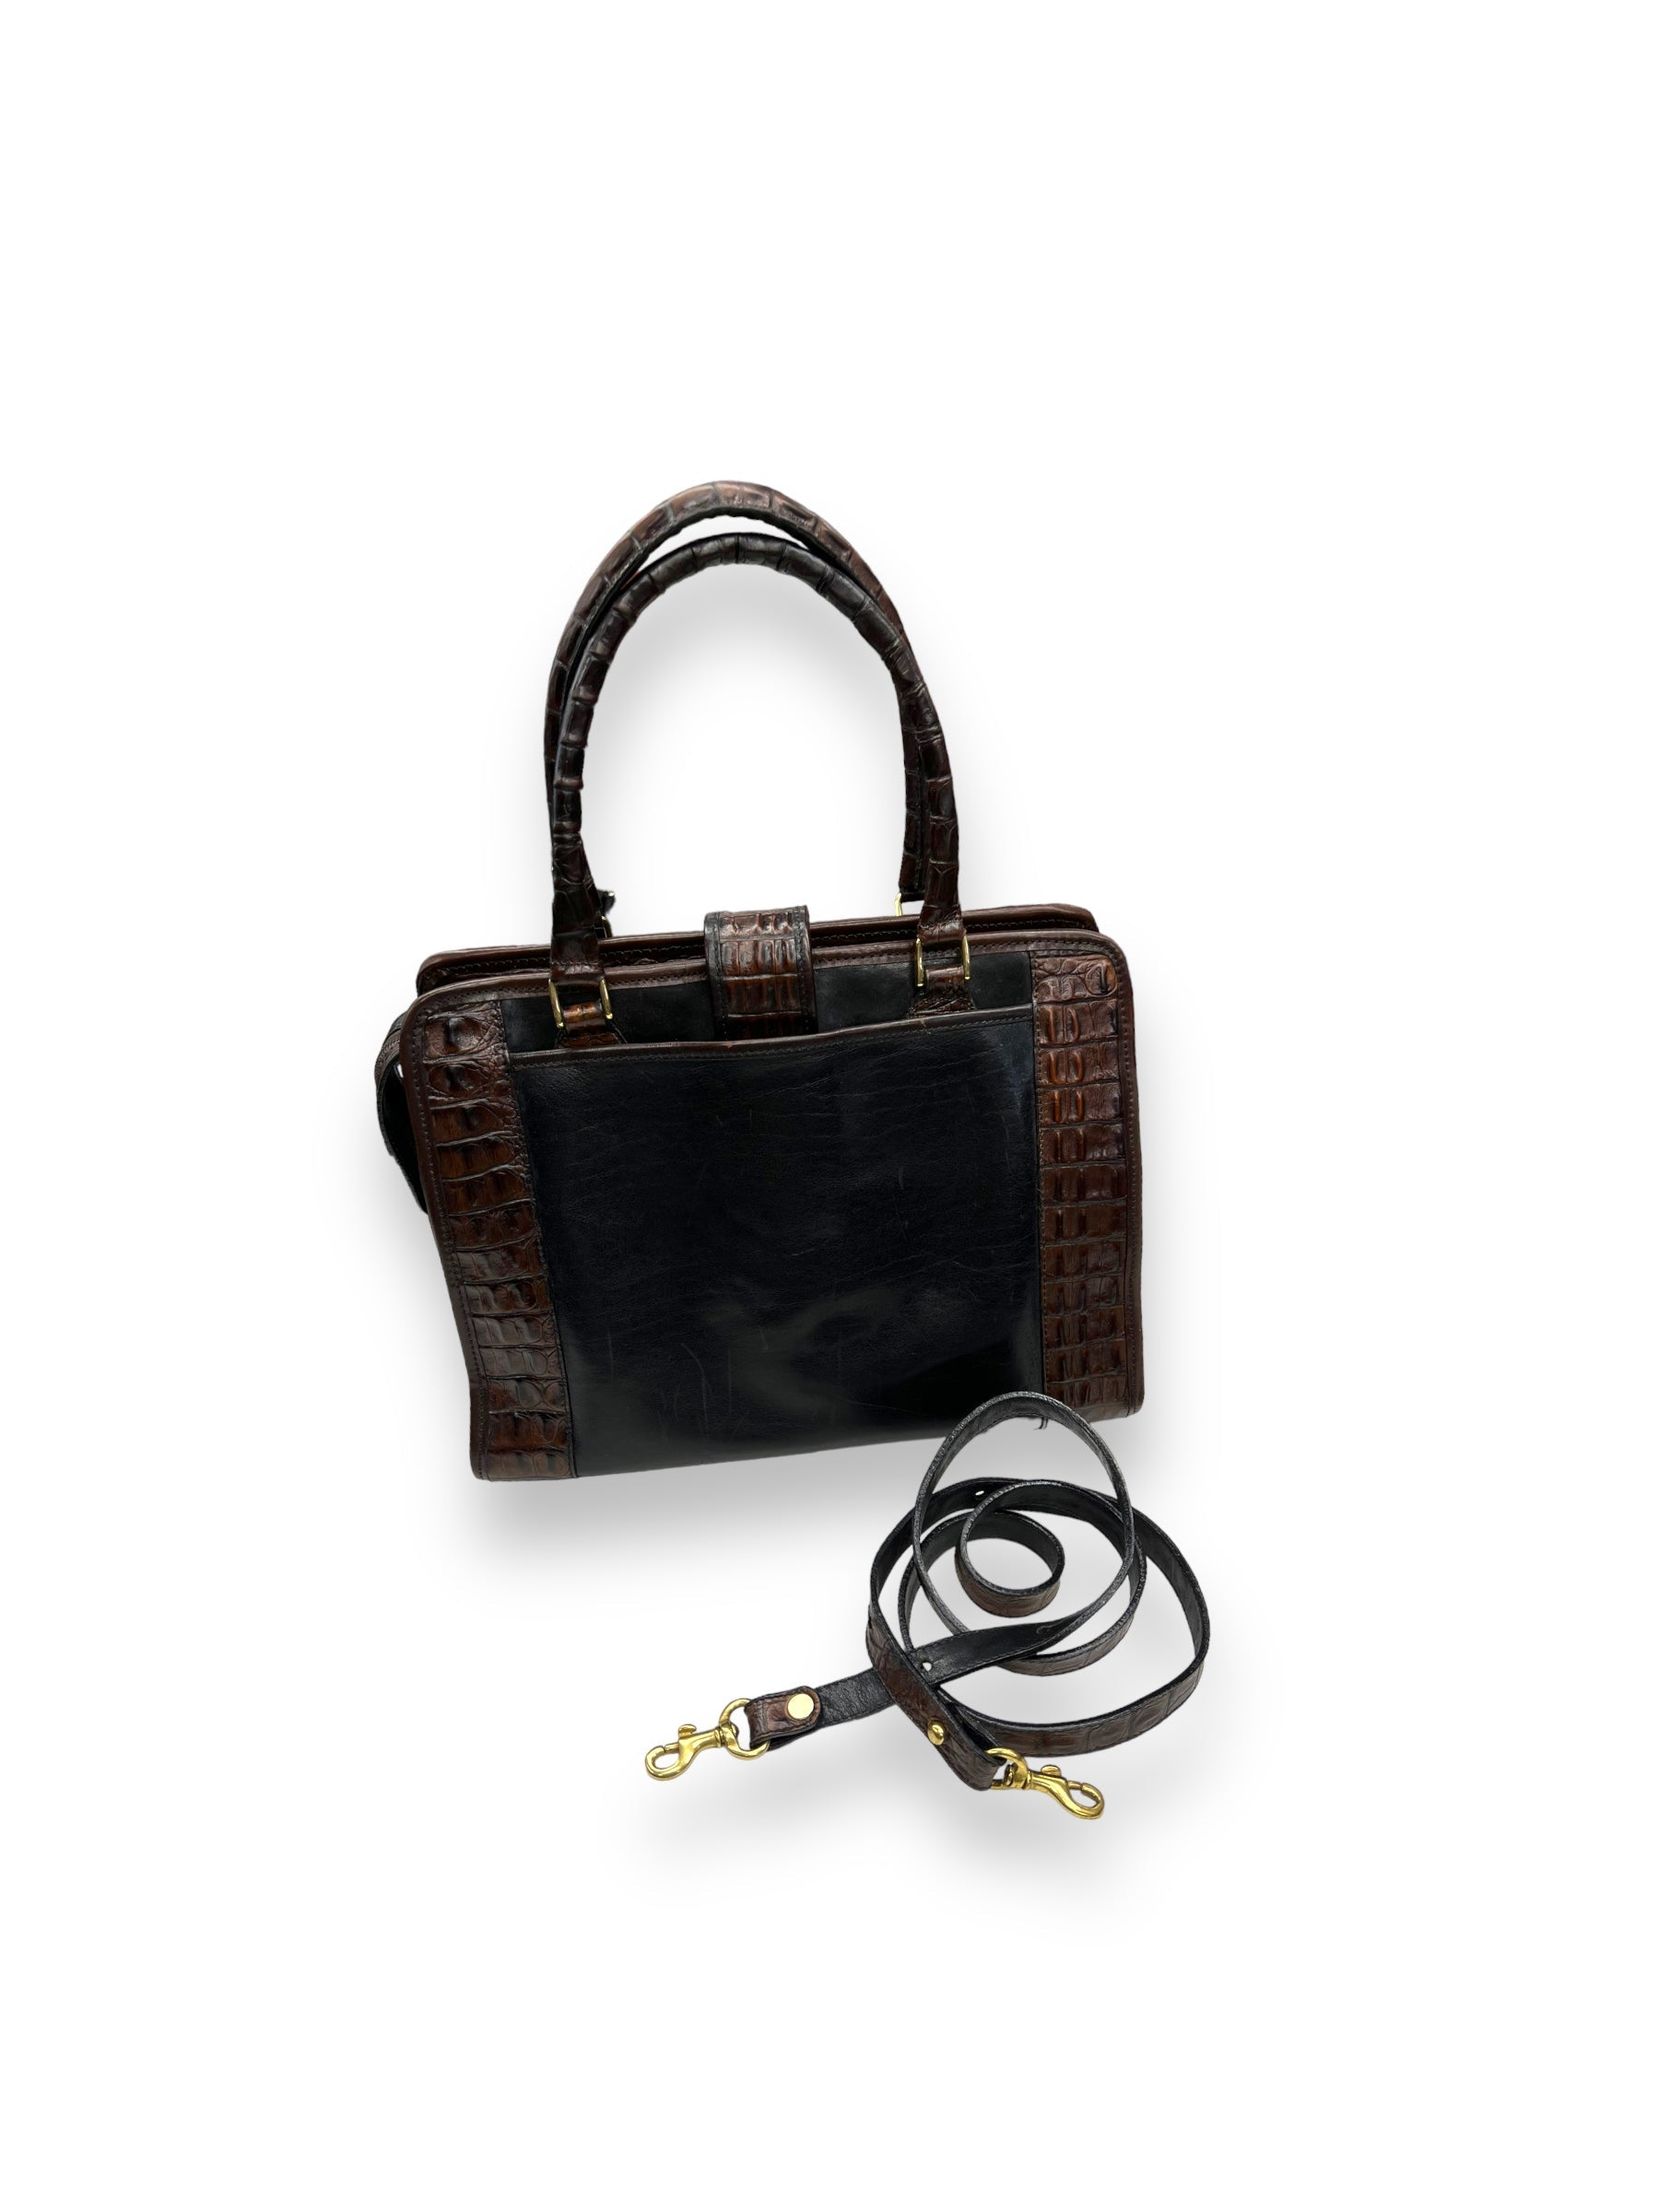 Brahmin Leather Shoulder Bags | Mercari